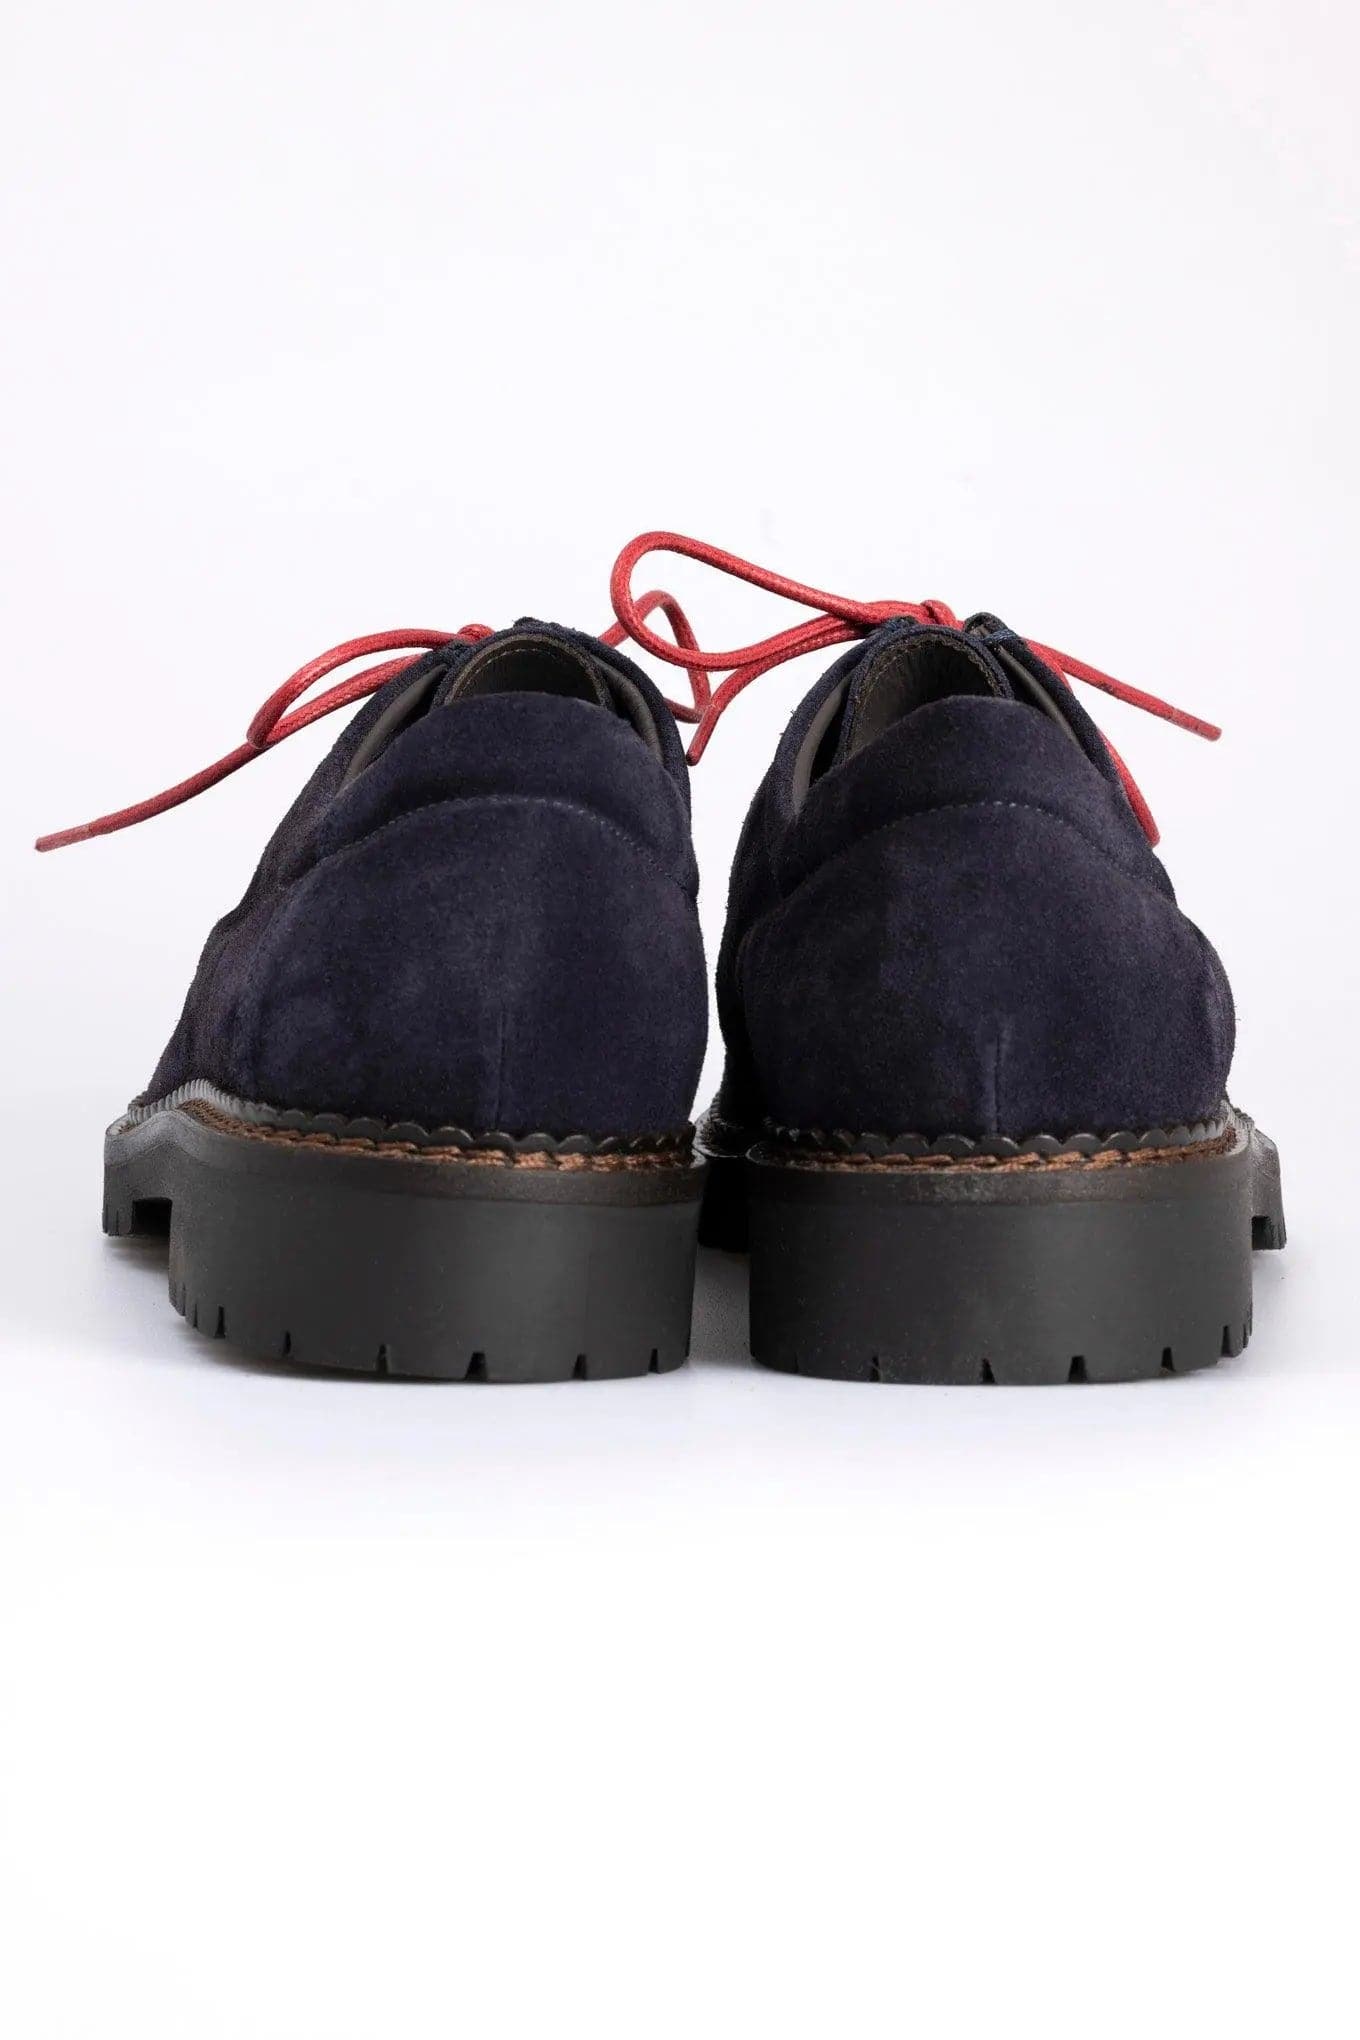 De Paz ShoesLe De Paz Shoes si prestano al tuo stile, seducendoti con il loro modello Boston! Una scarpa perfetta per un look da vero trend-setter: non rinunciare a un look modeDE PAZ